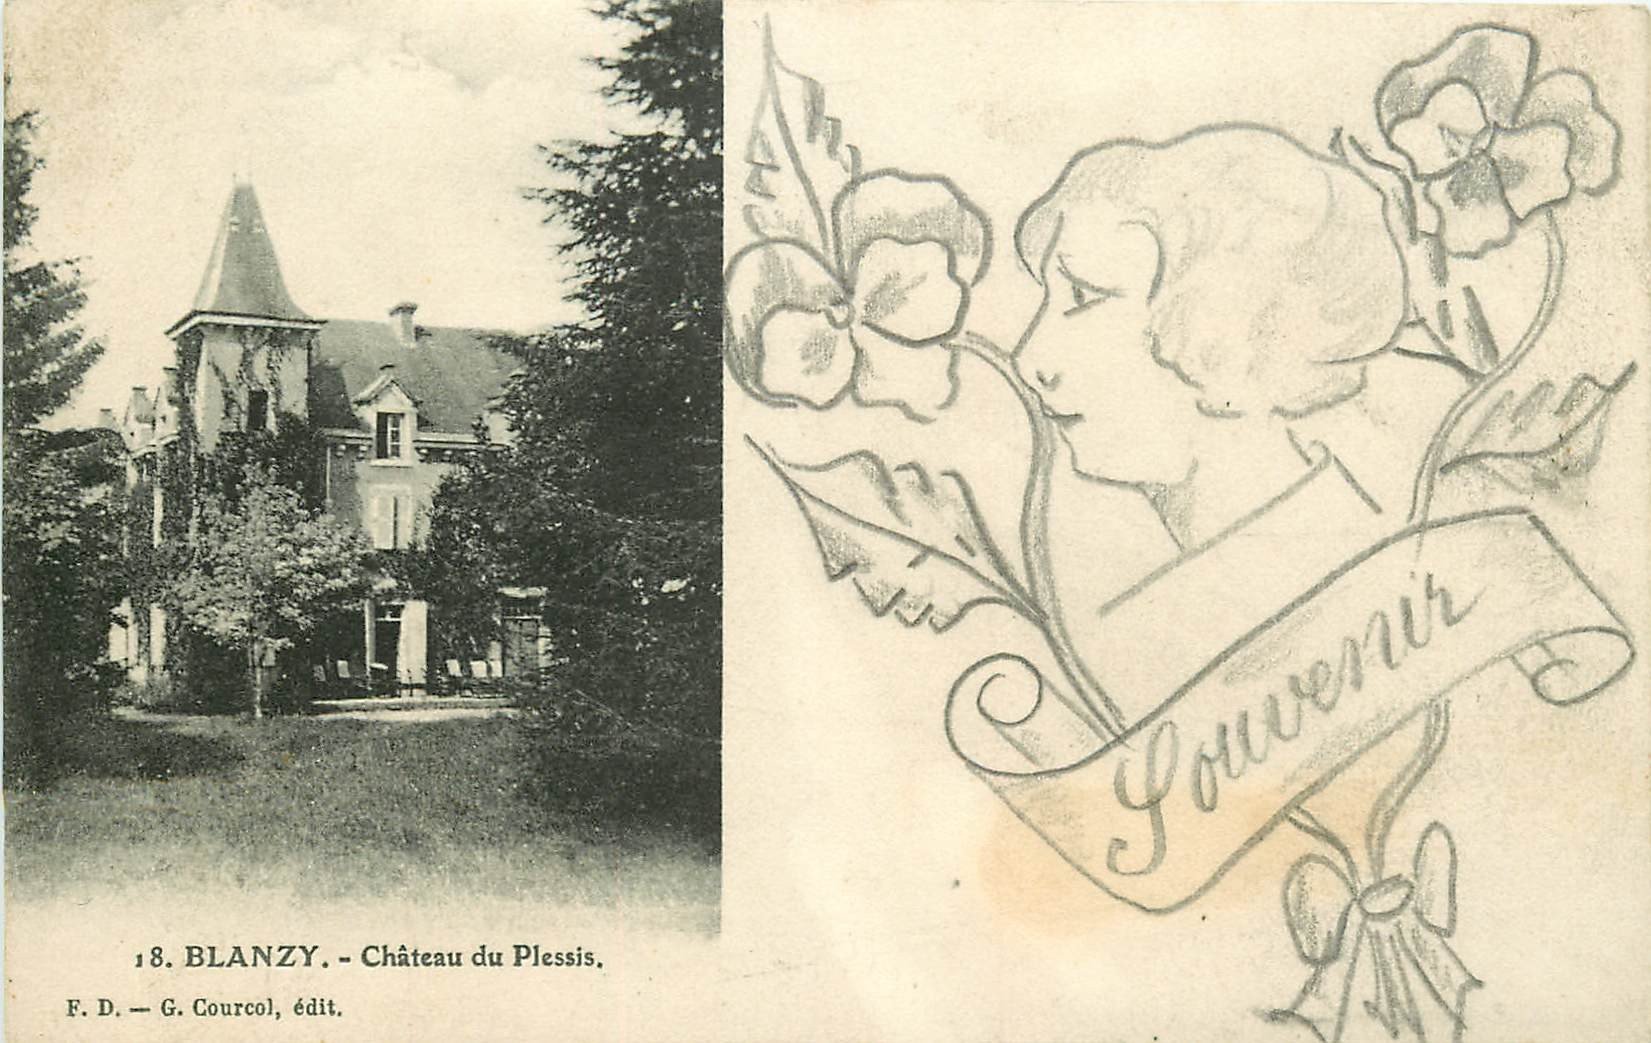 71 BLANZY. Château du Plessis et véritable petit dessin fait à la main au crayon noir